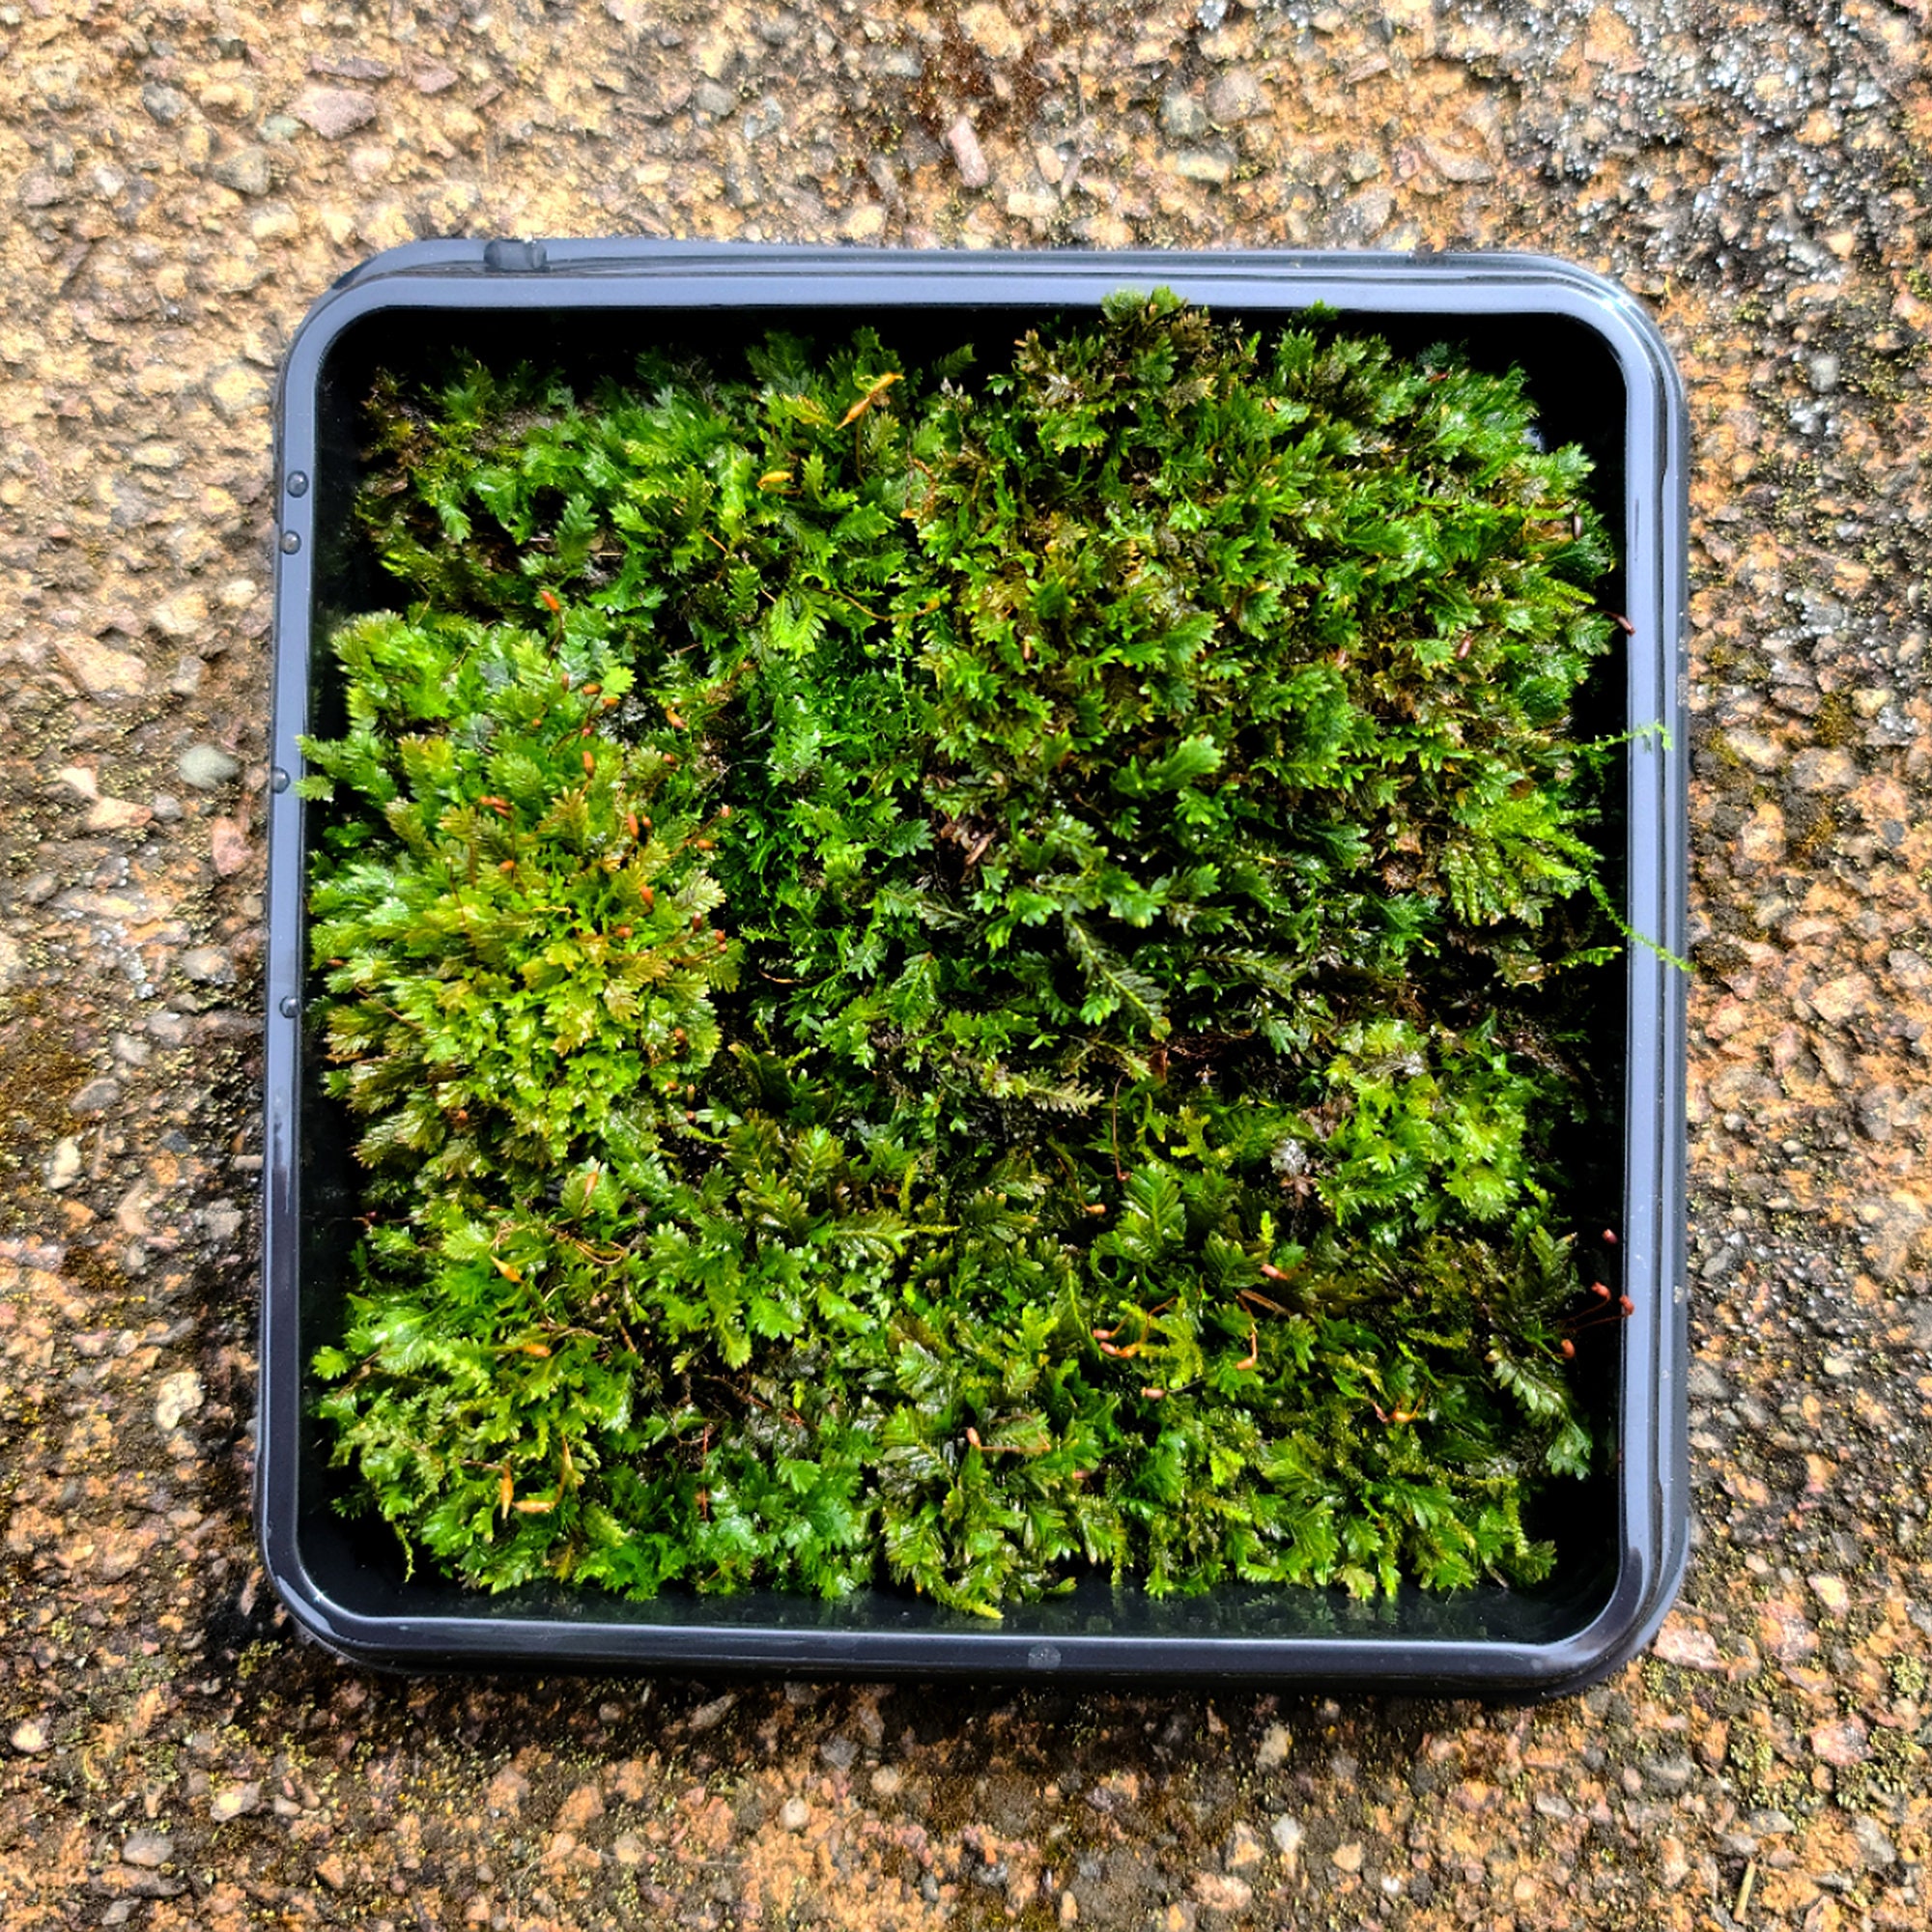 Tree Moss climacium Americanum / Dendroides Rare Live Moss for Terrarium,  Terrarium Moss, Live Moss for DIY Terrarium 